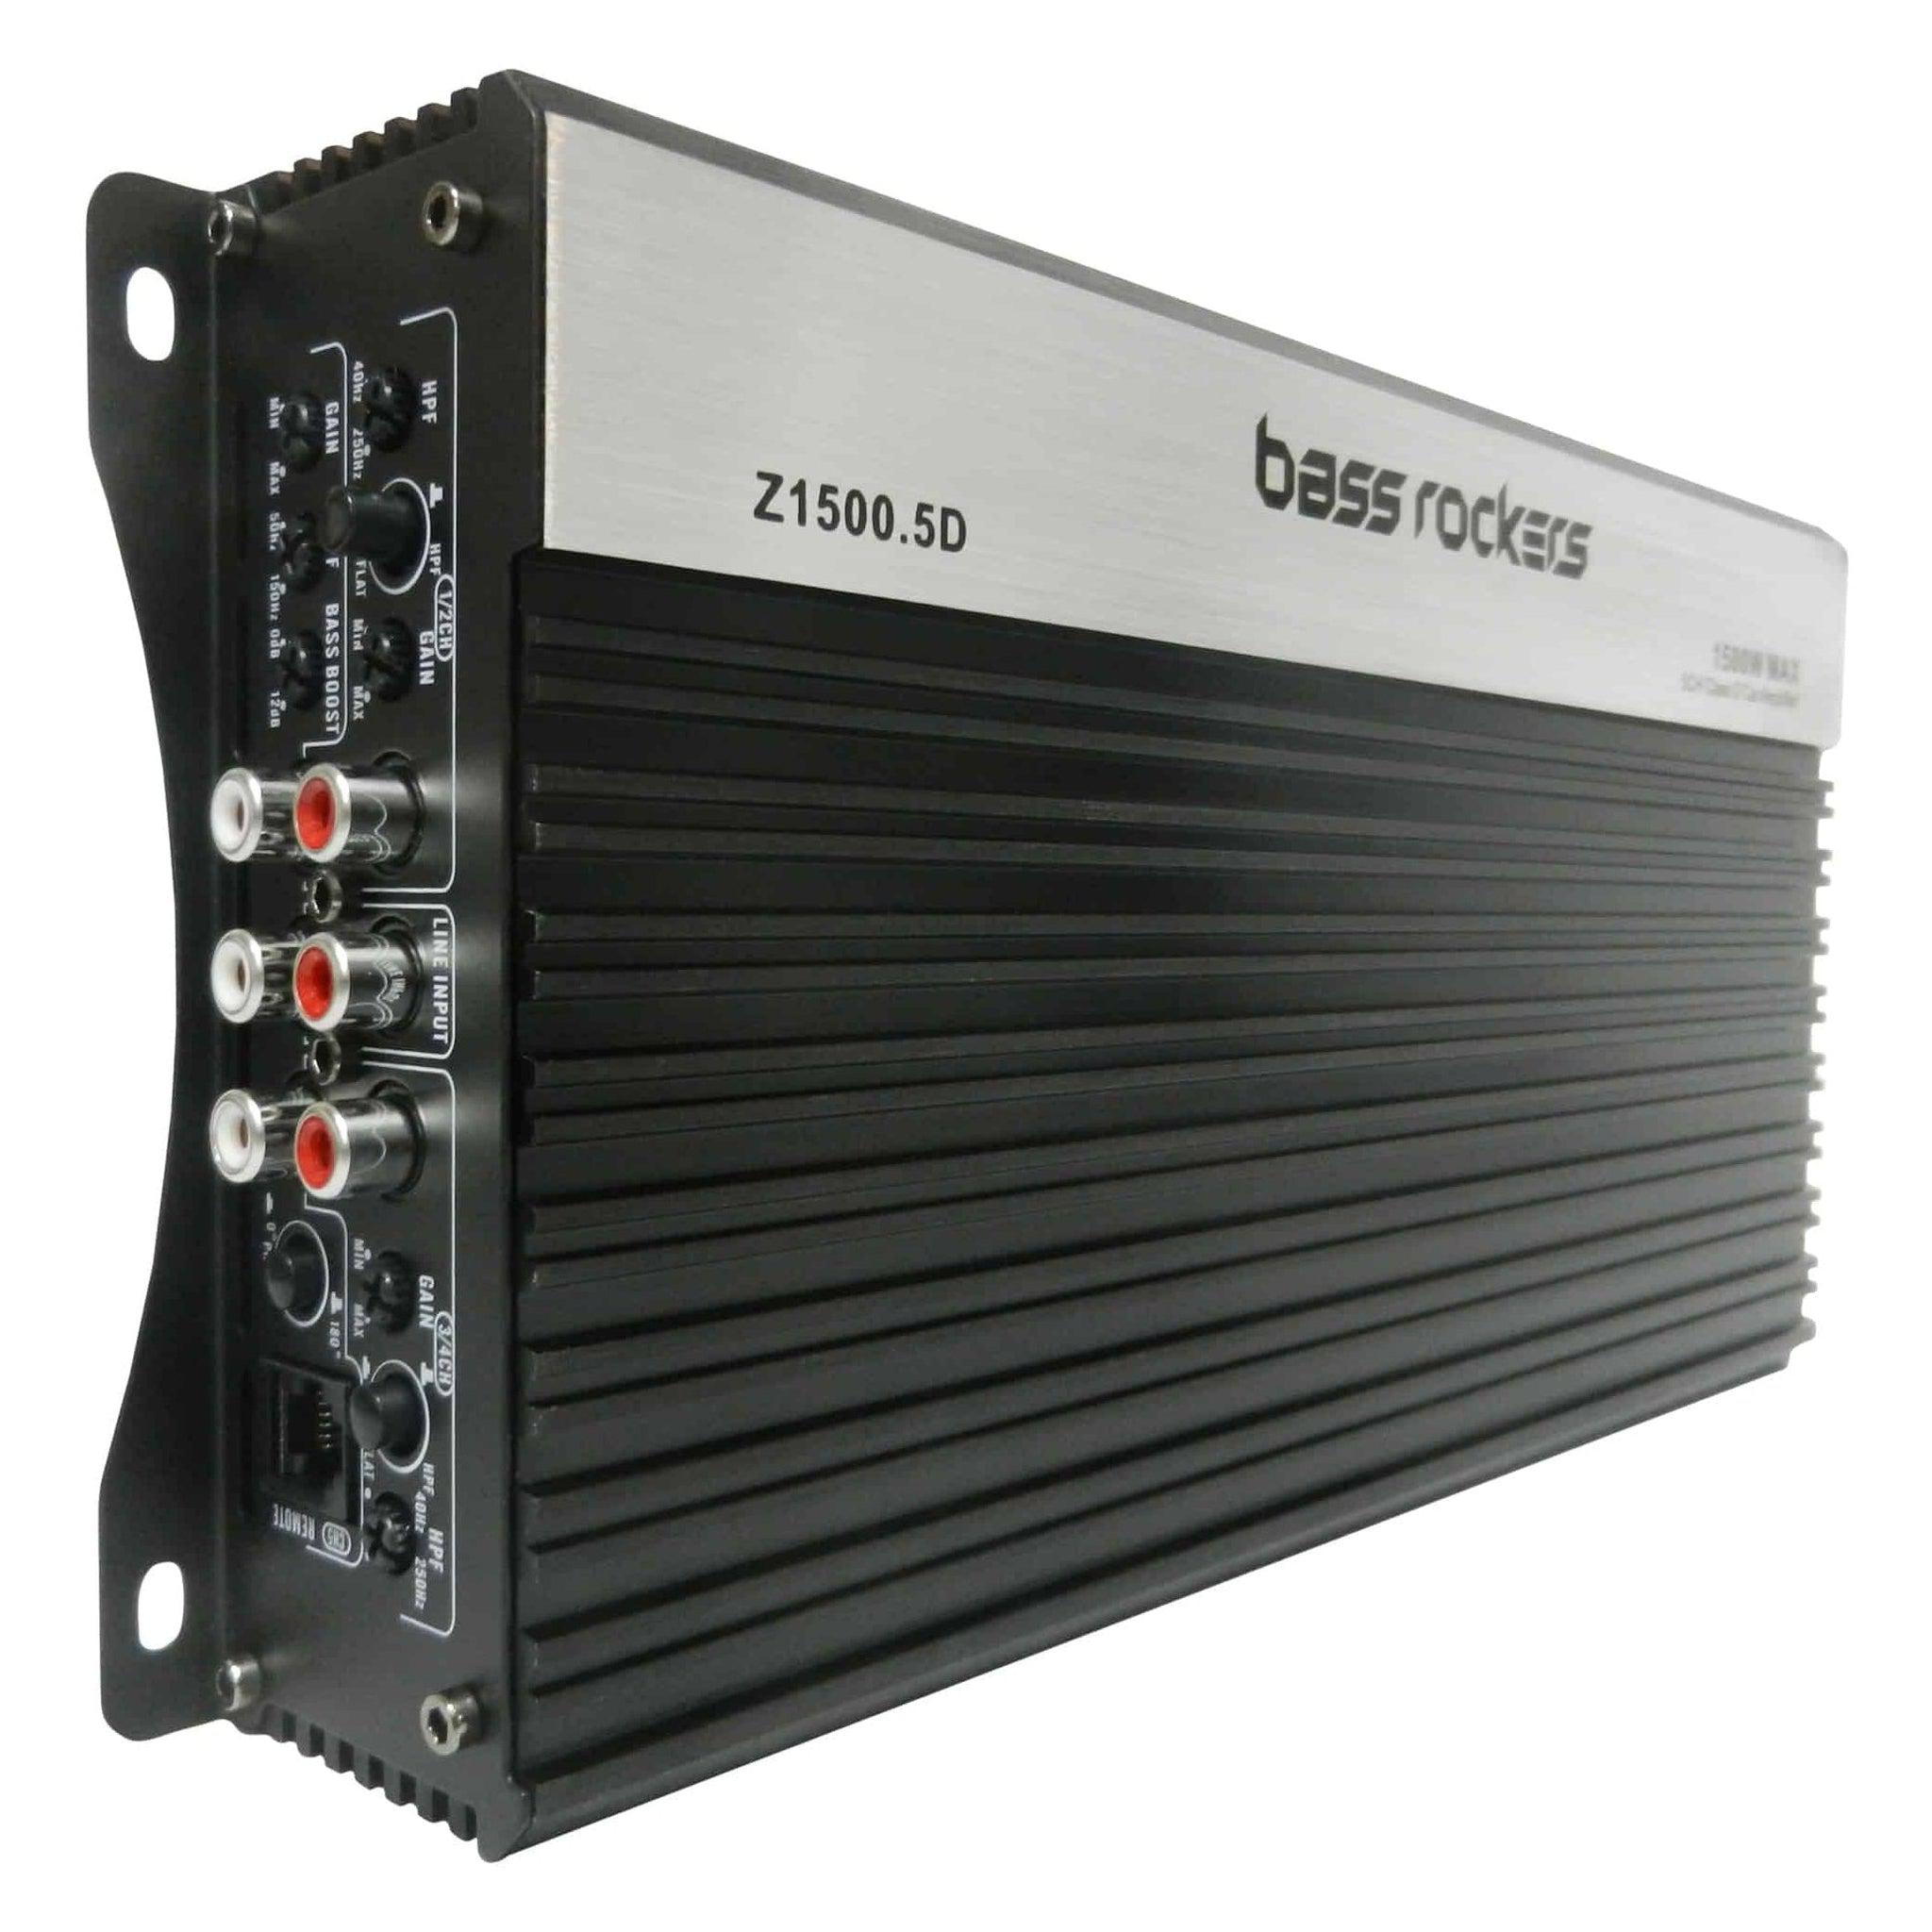 Z15005 Class D 5-Channel 1500 Watts Amplifier-Bass Rockers-1